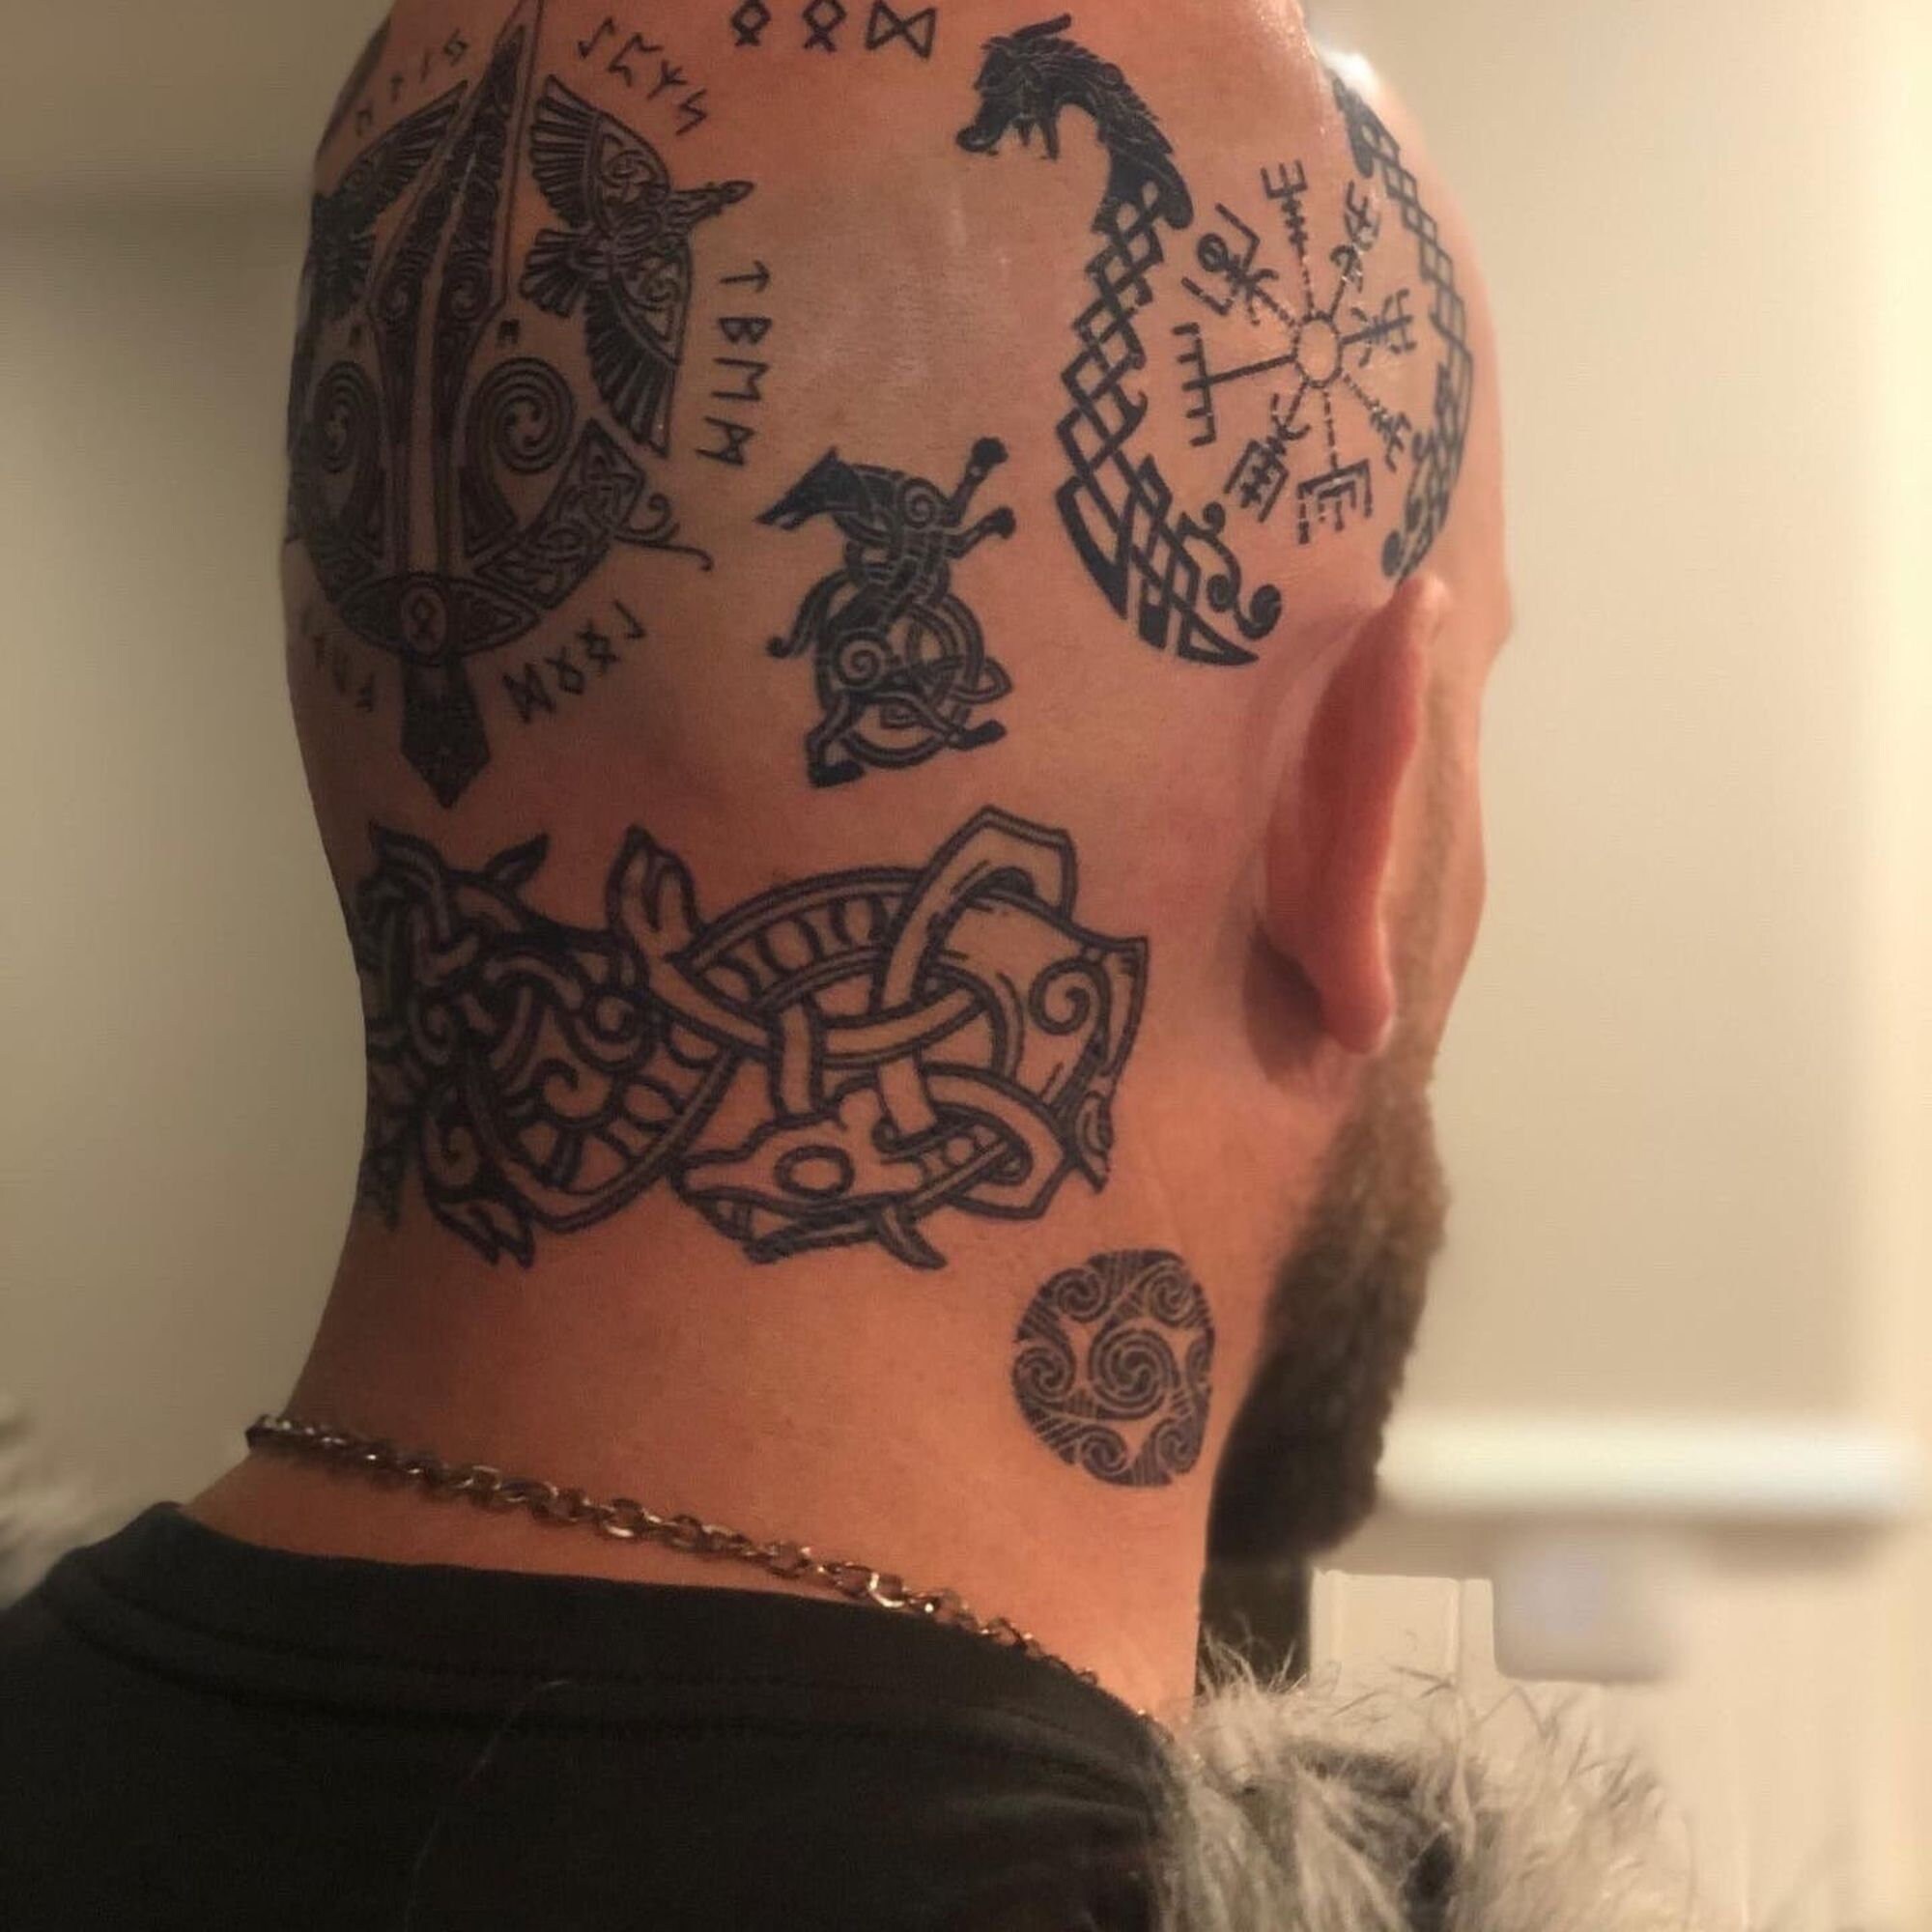 5hrs Permanent viking tattoo, 15000